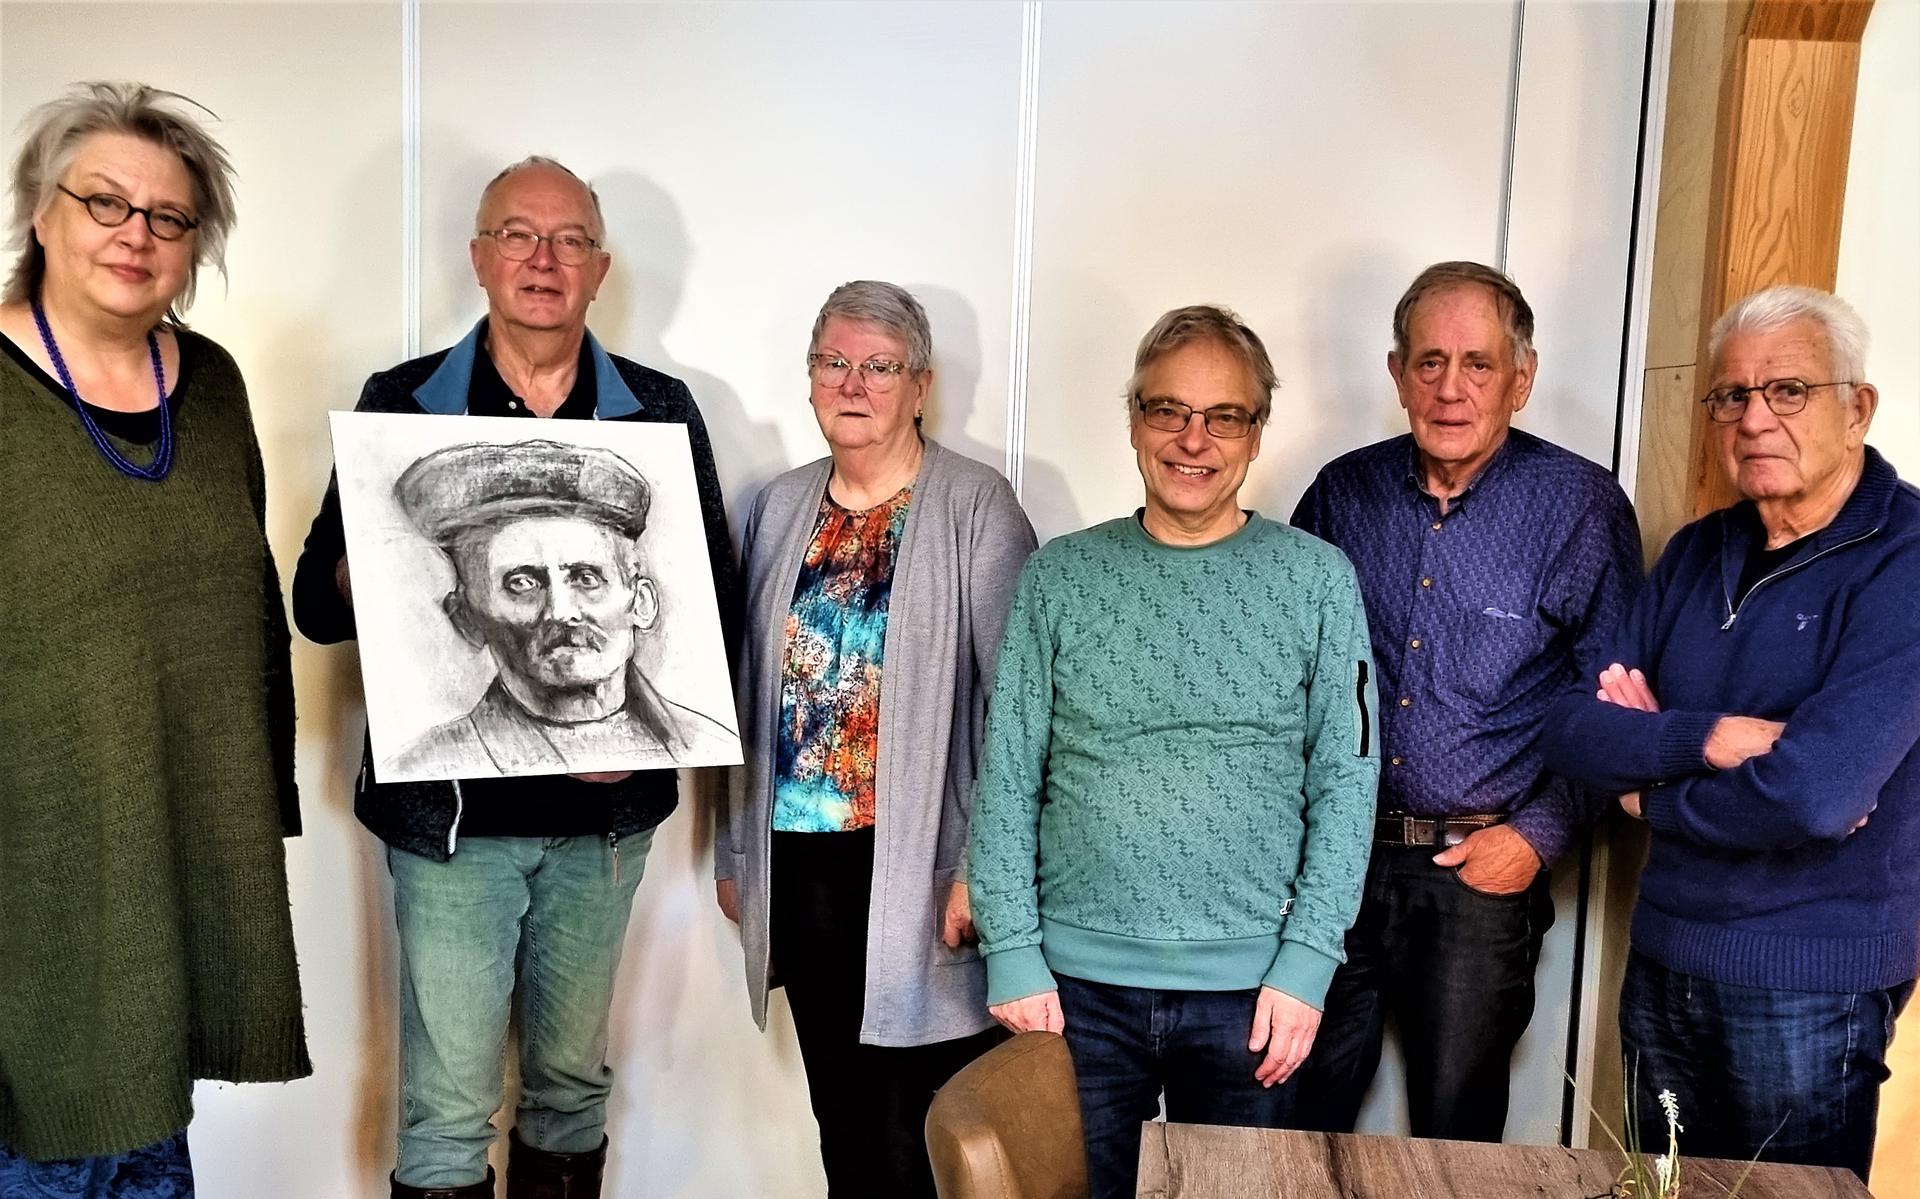 Kunstenaar Hetty Combs met voorzitter Rinze Dijkstra. Janny Winter, Willem Weening, Simon Hoeksma en Jan Tuinstra (van links naar rechts).